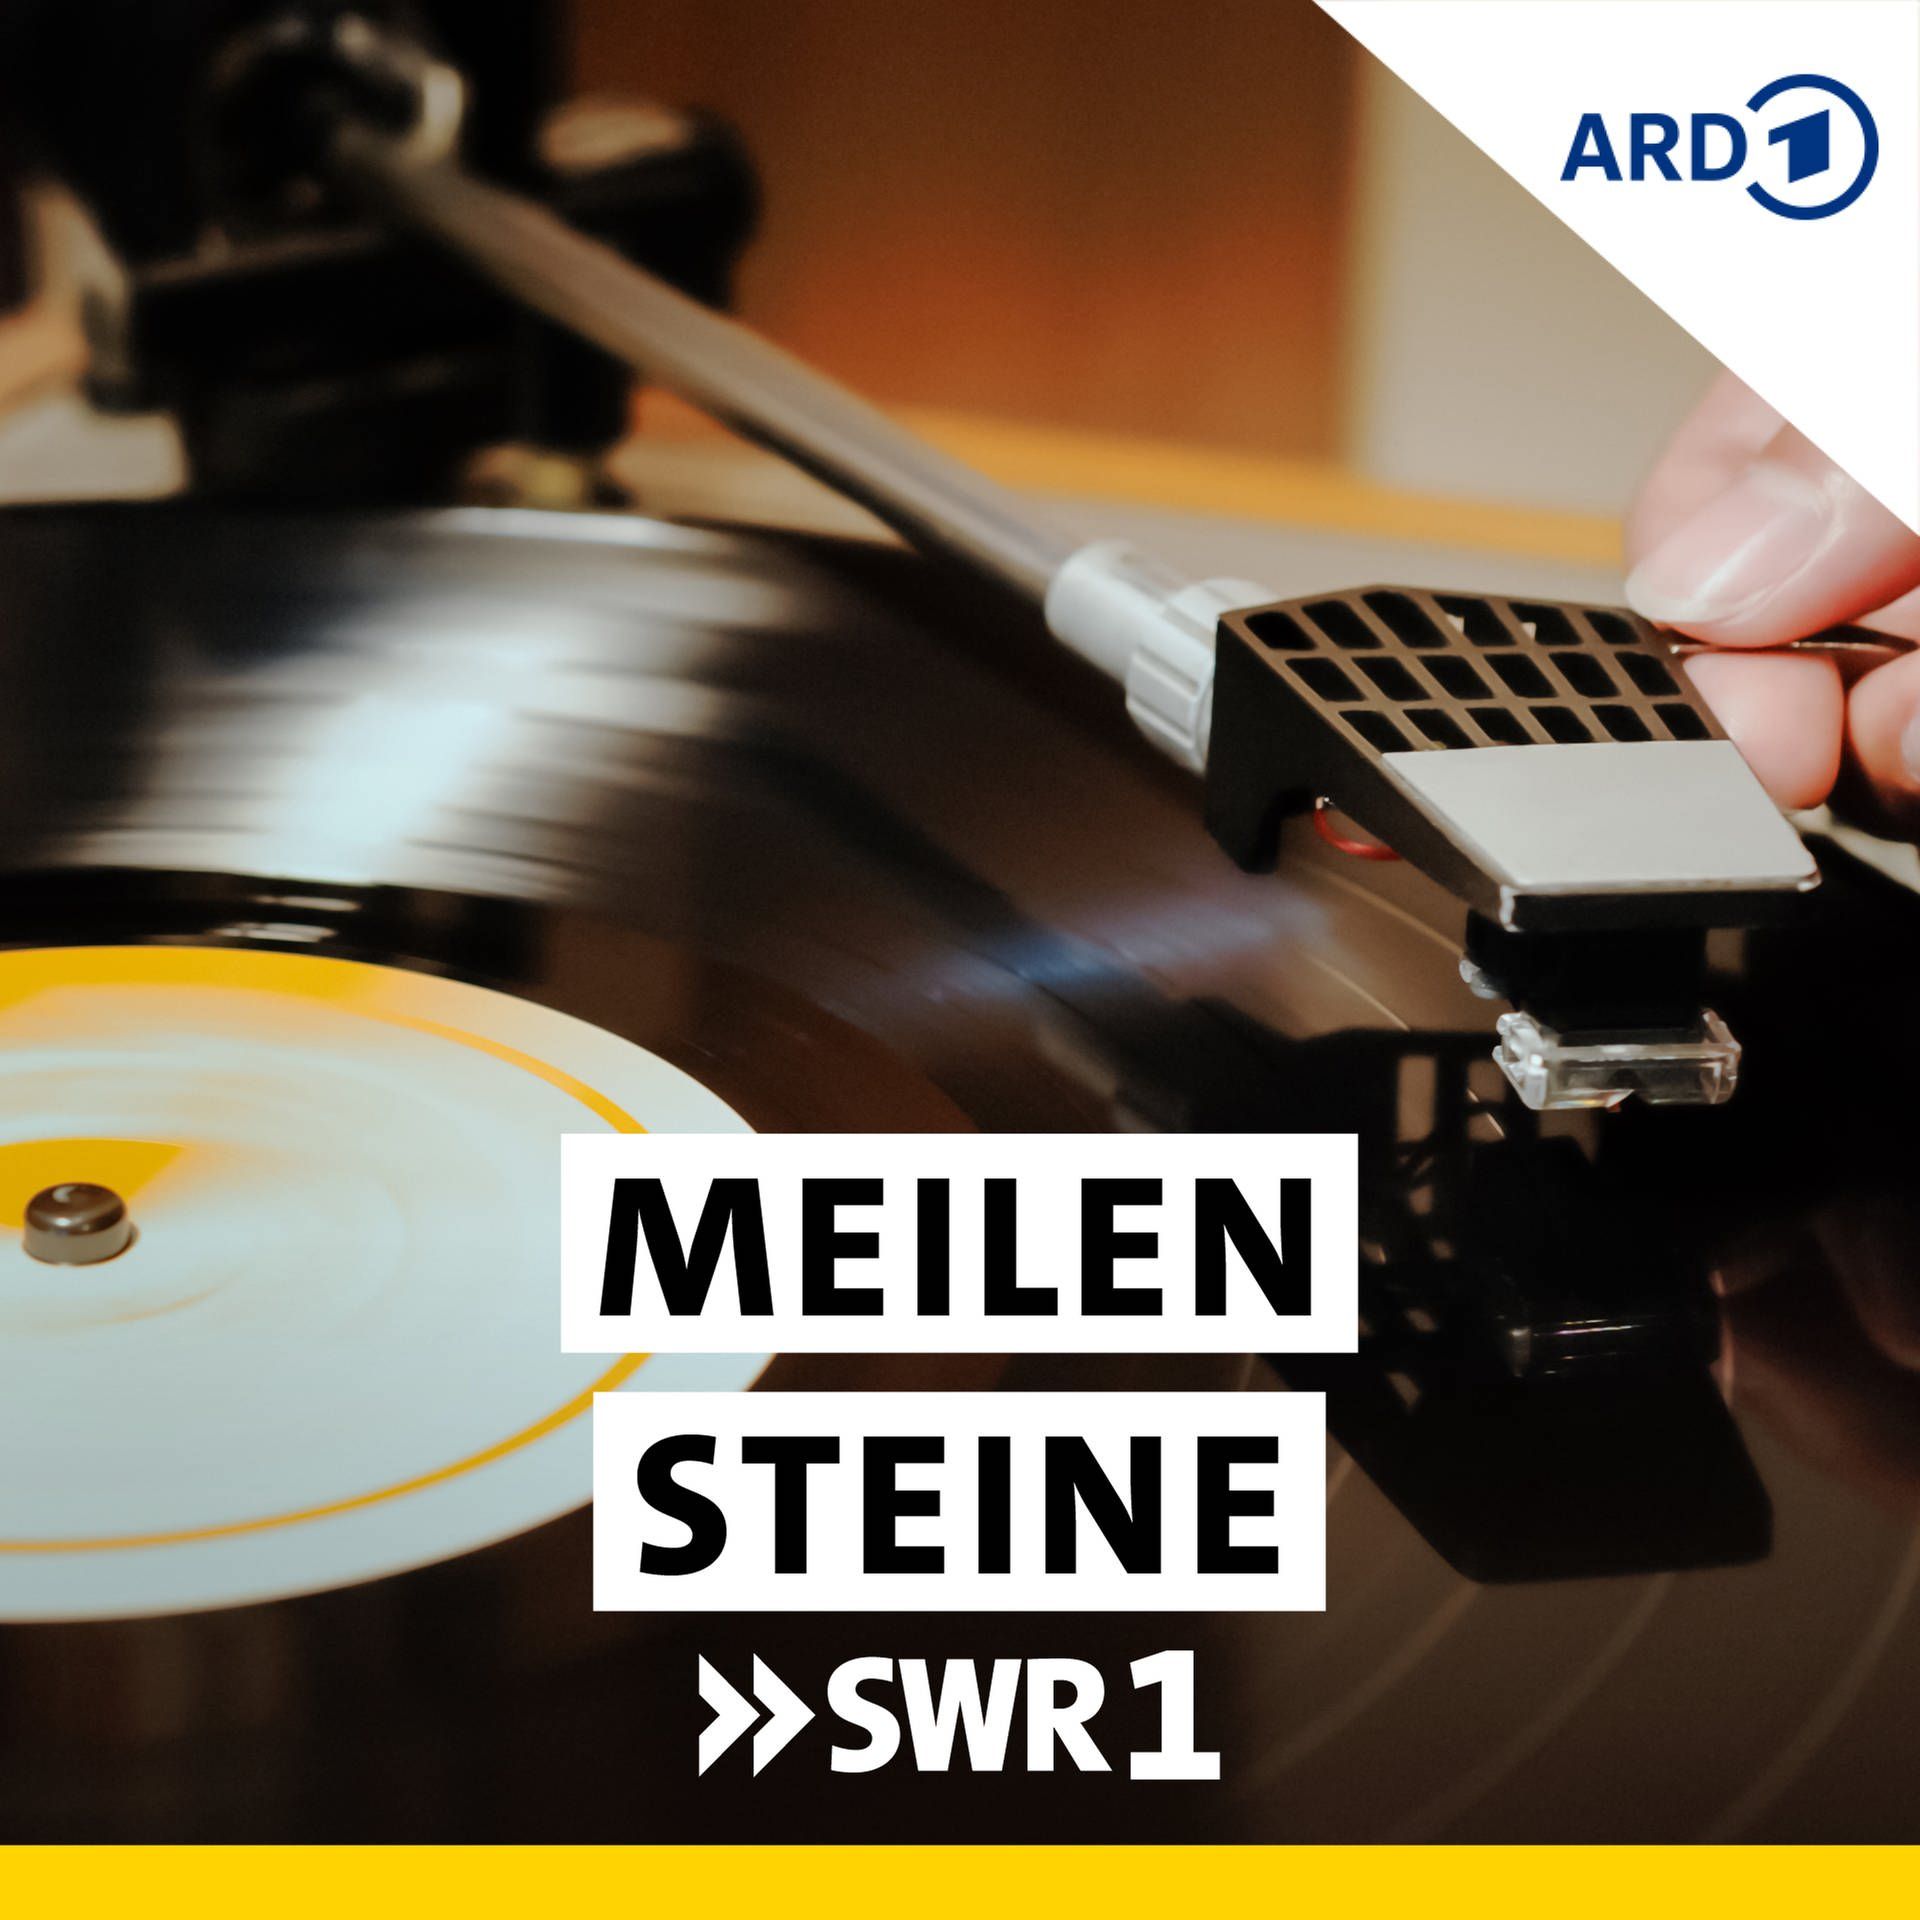 Geschichte - machten Alben, - RTL+ Meilensteine Podcast | die SWR1